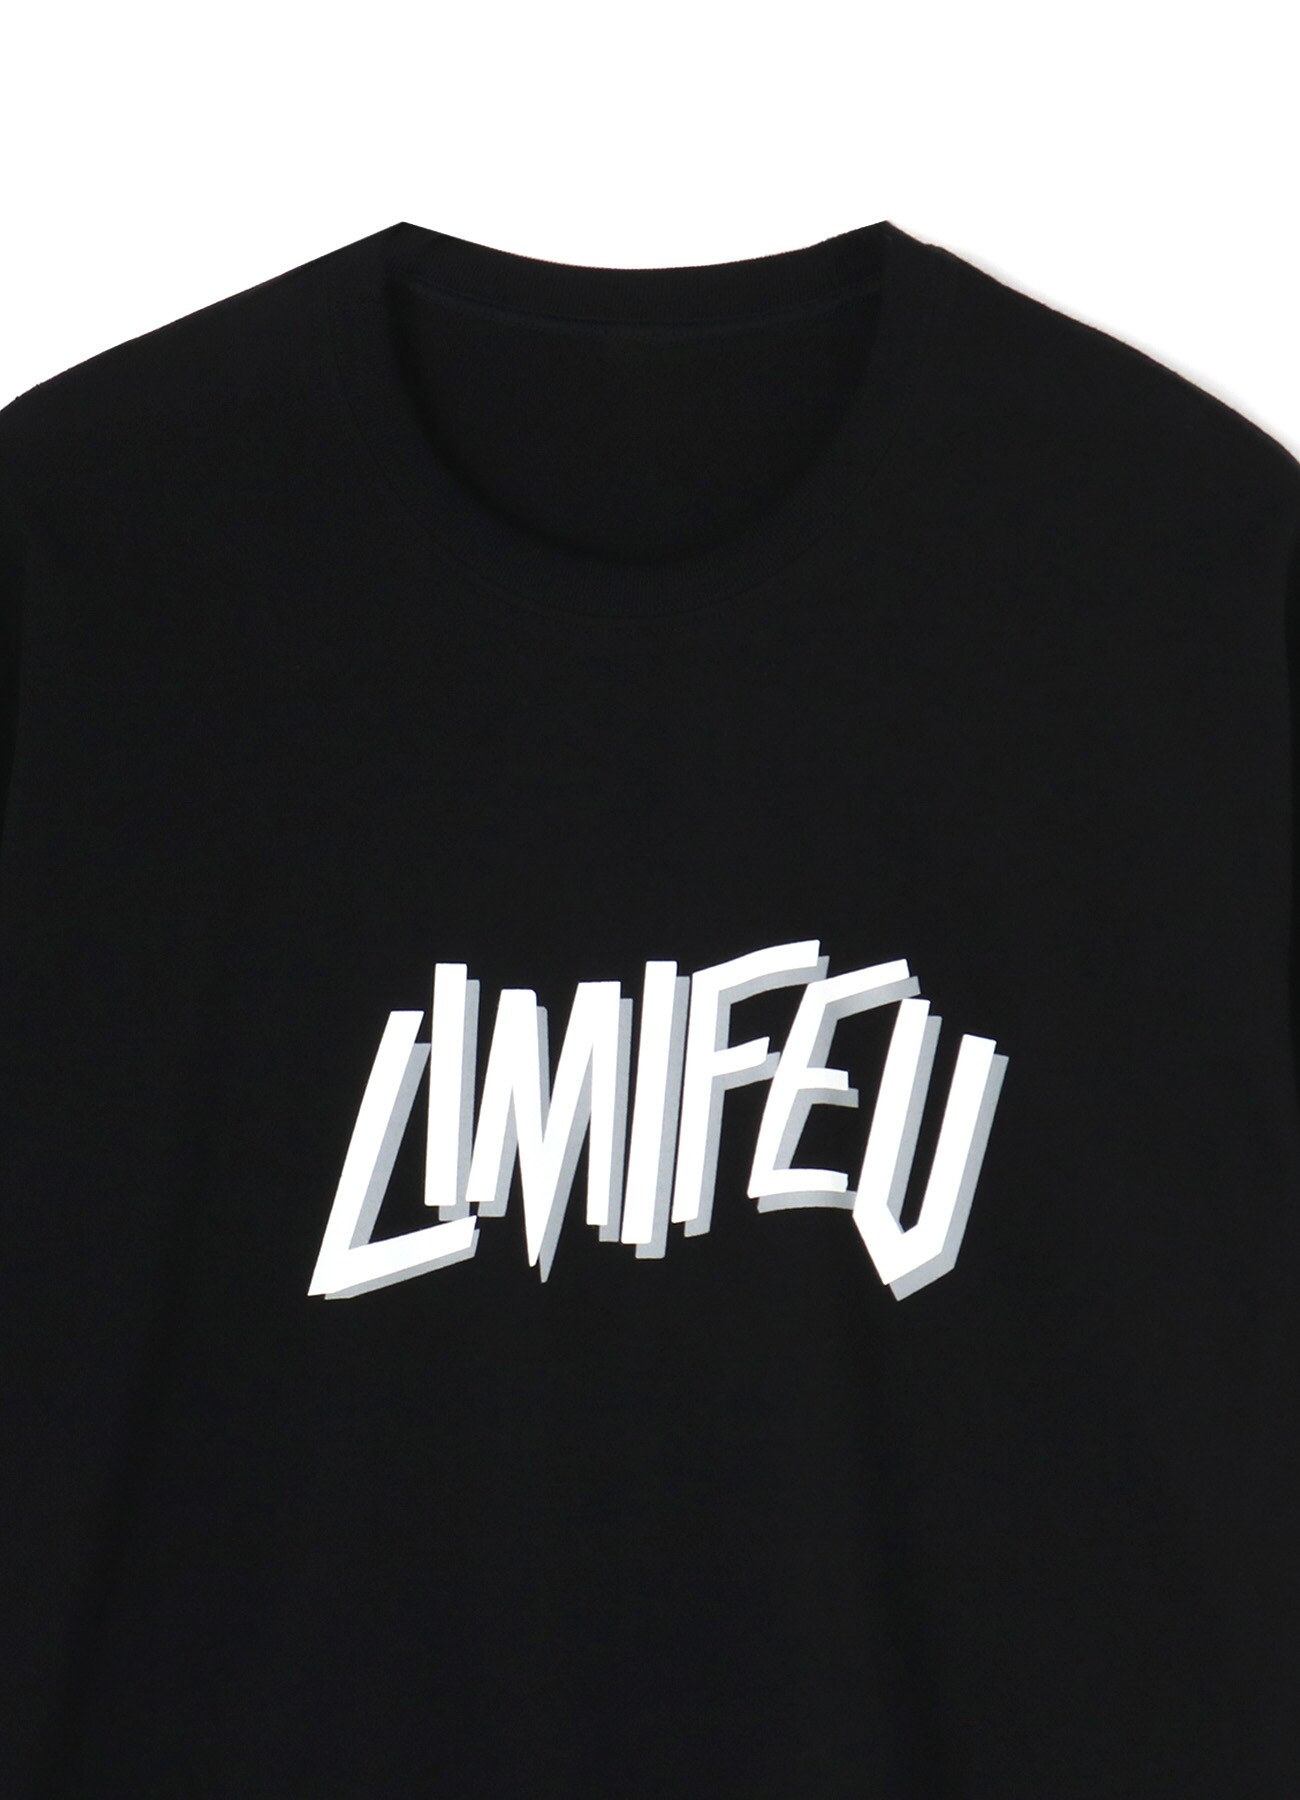 20/-Plain Stitch LIMI FEU Print T-Shirt F(M Black): LIMI feu｜THE 